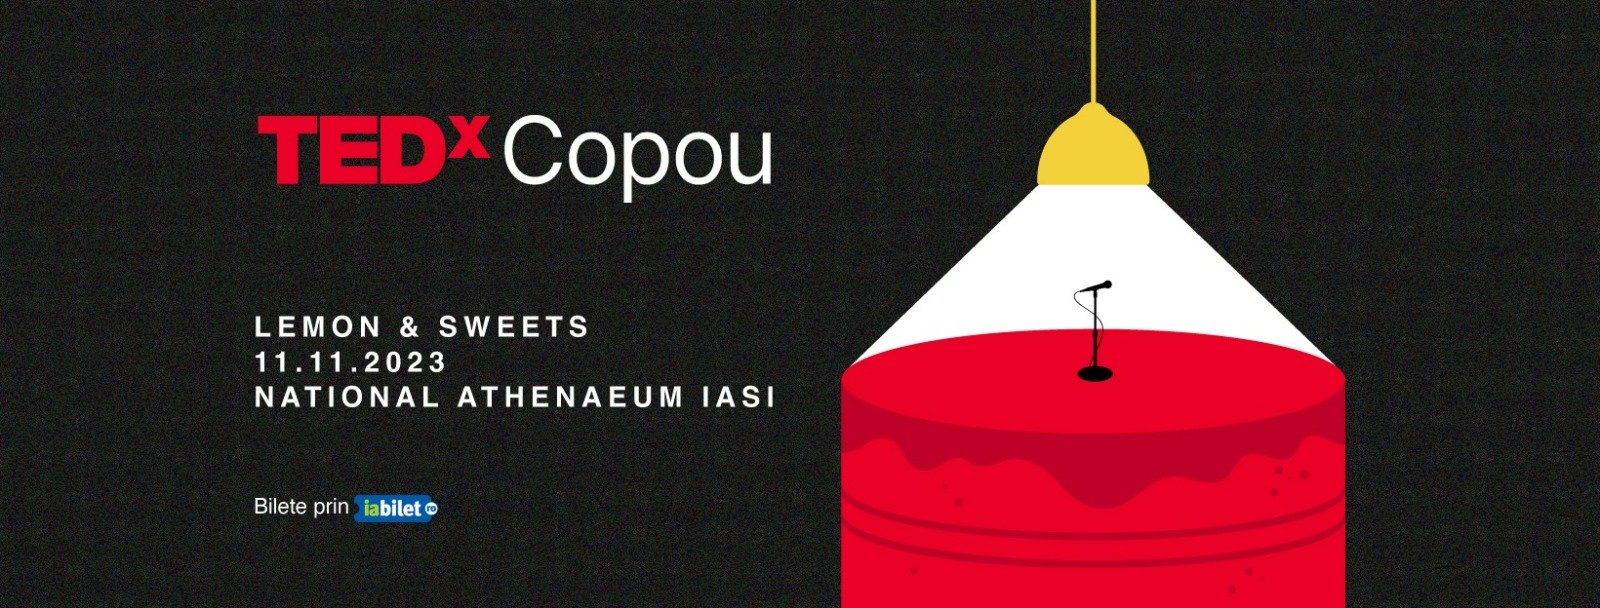  Unii dintre cei mai de succes români vor vorbi sâmbătă la TEDX Copou. Lista vorbitorilor, şi cât costă biletul?